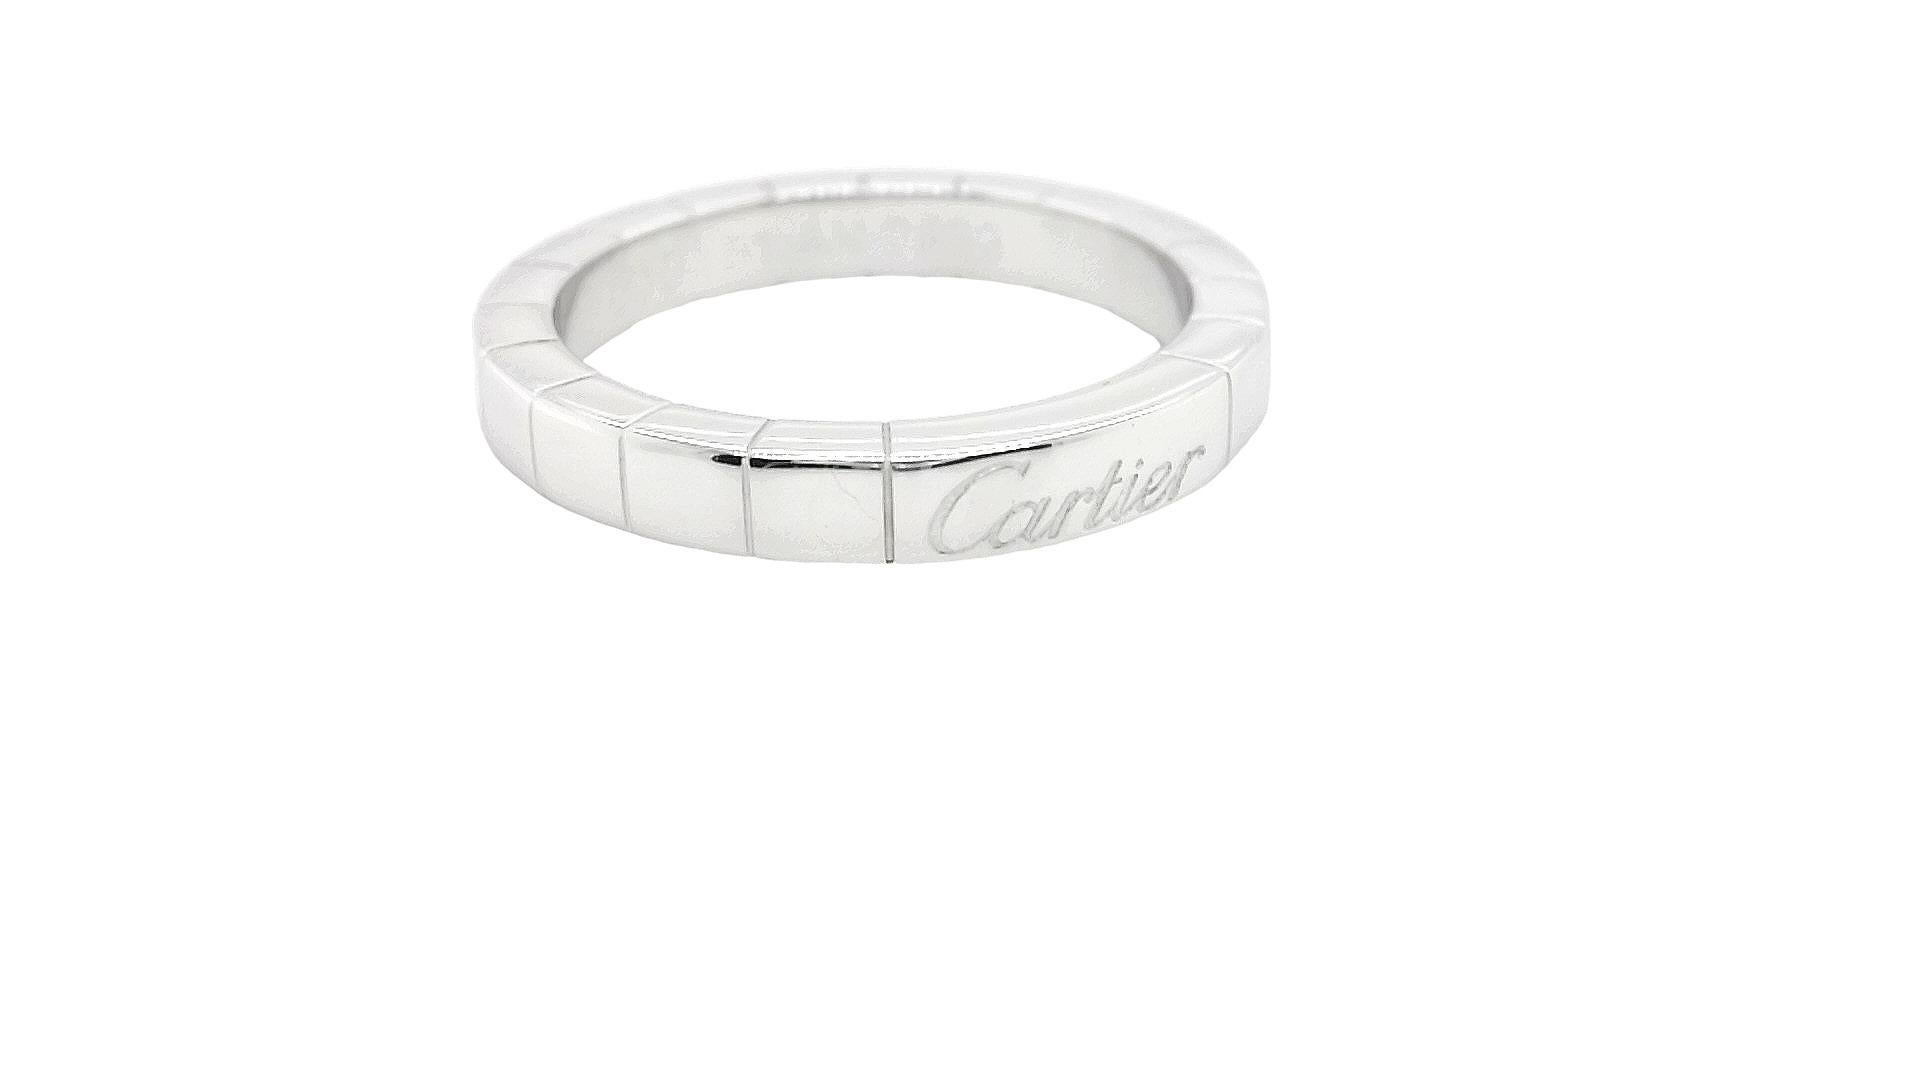 cartier signature ring